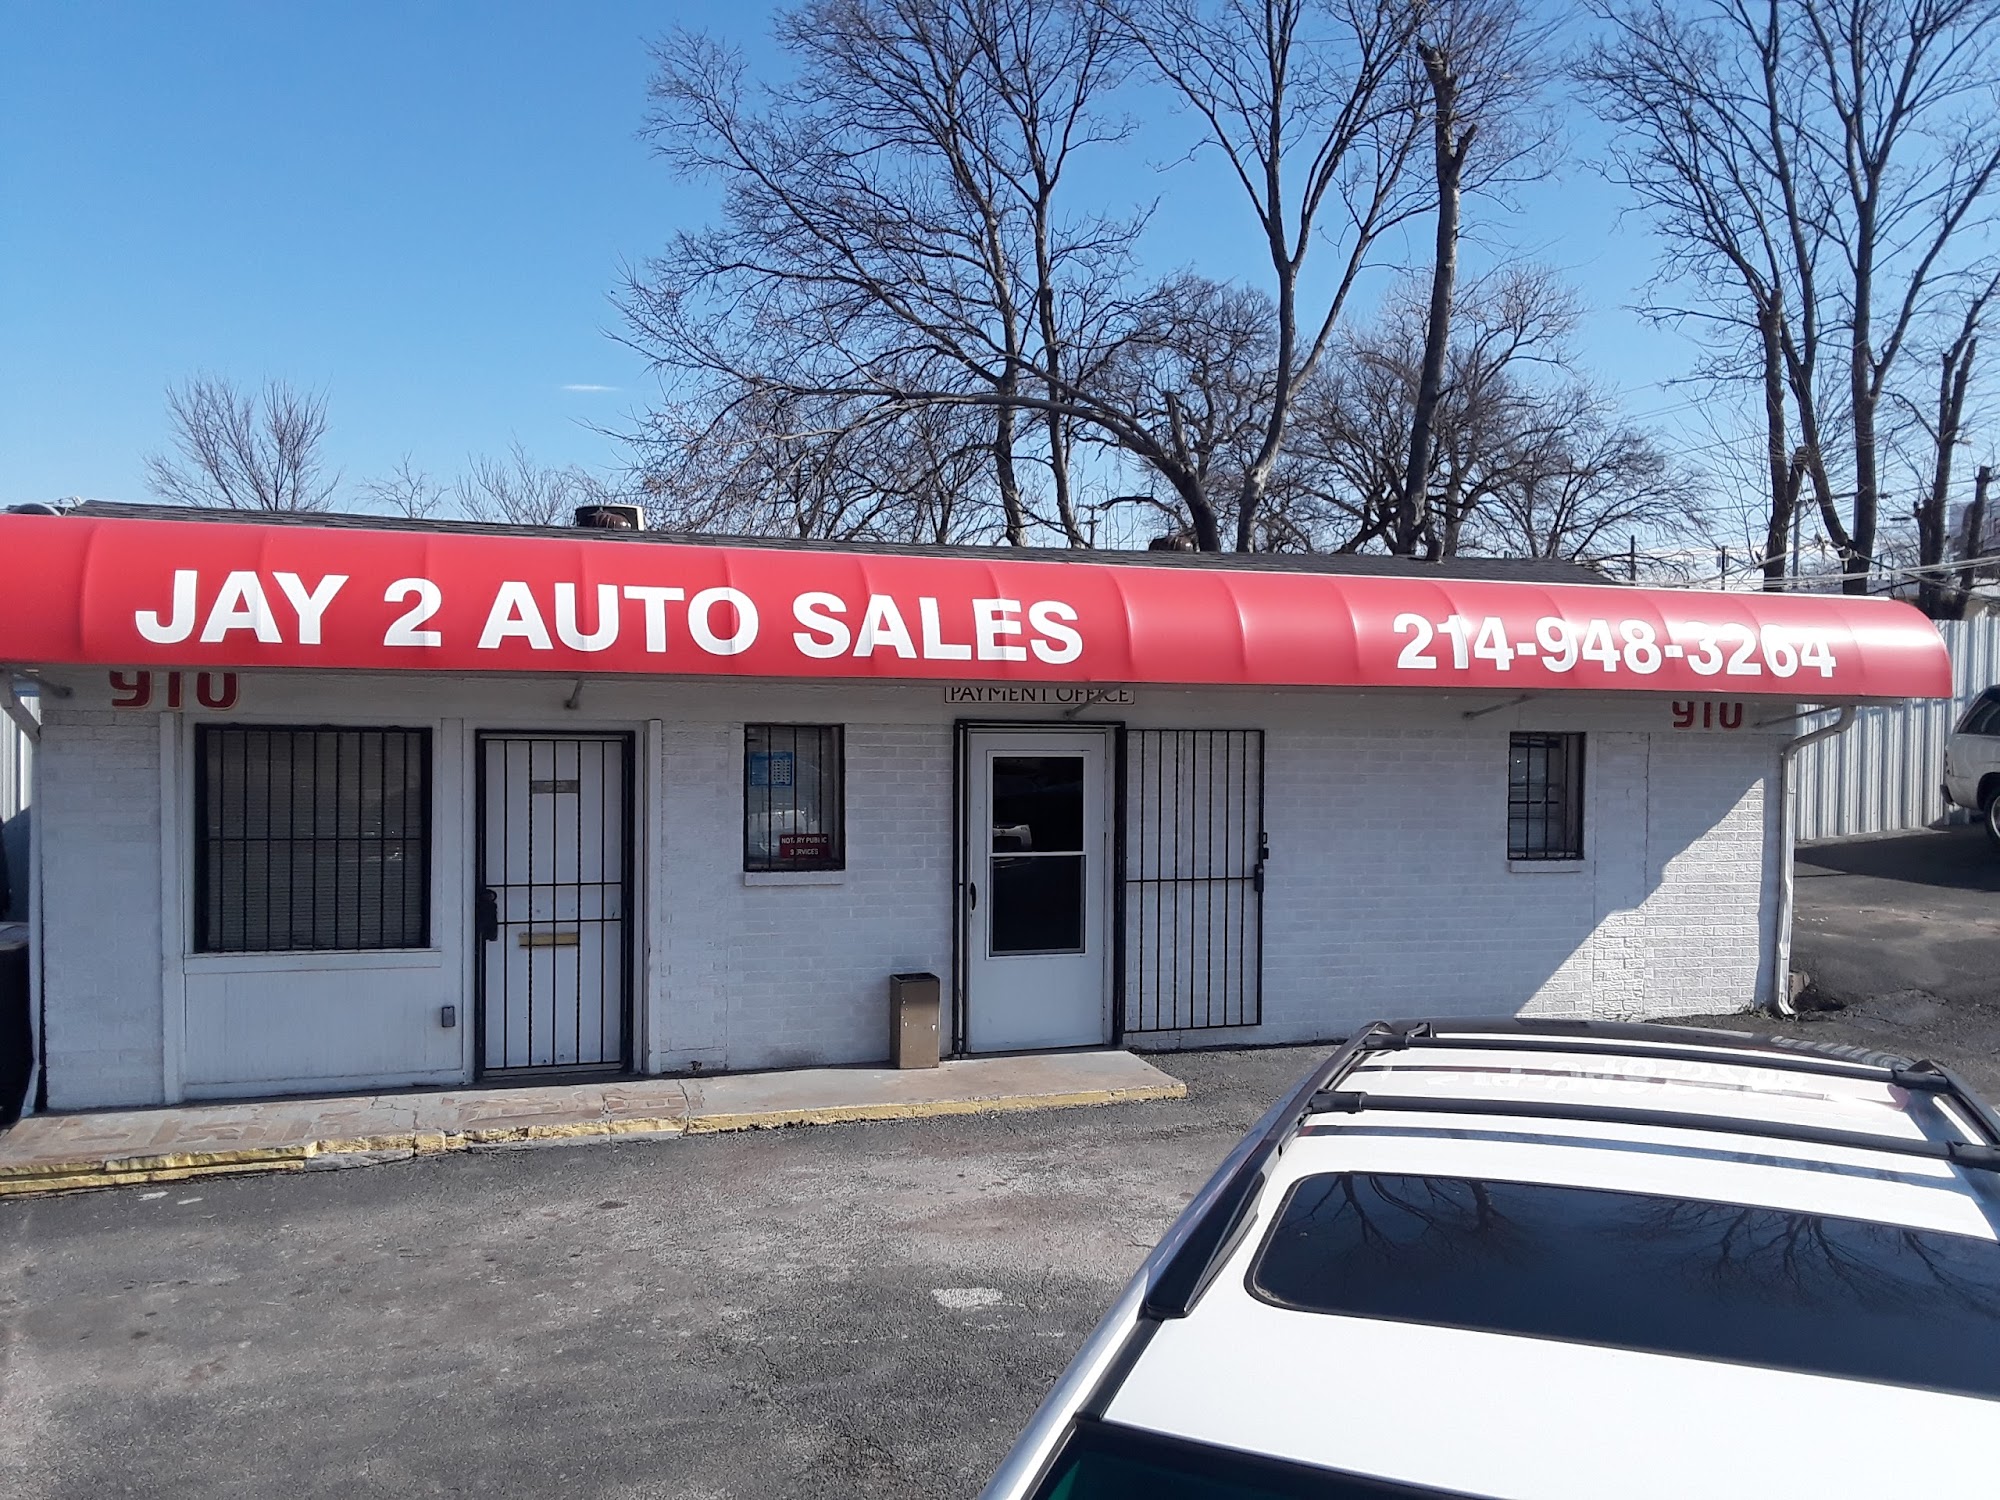 Jay 2 Auto Sales